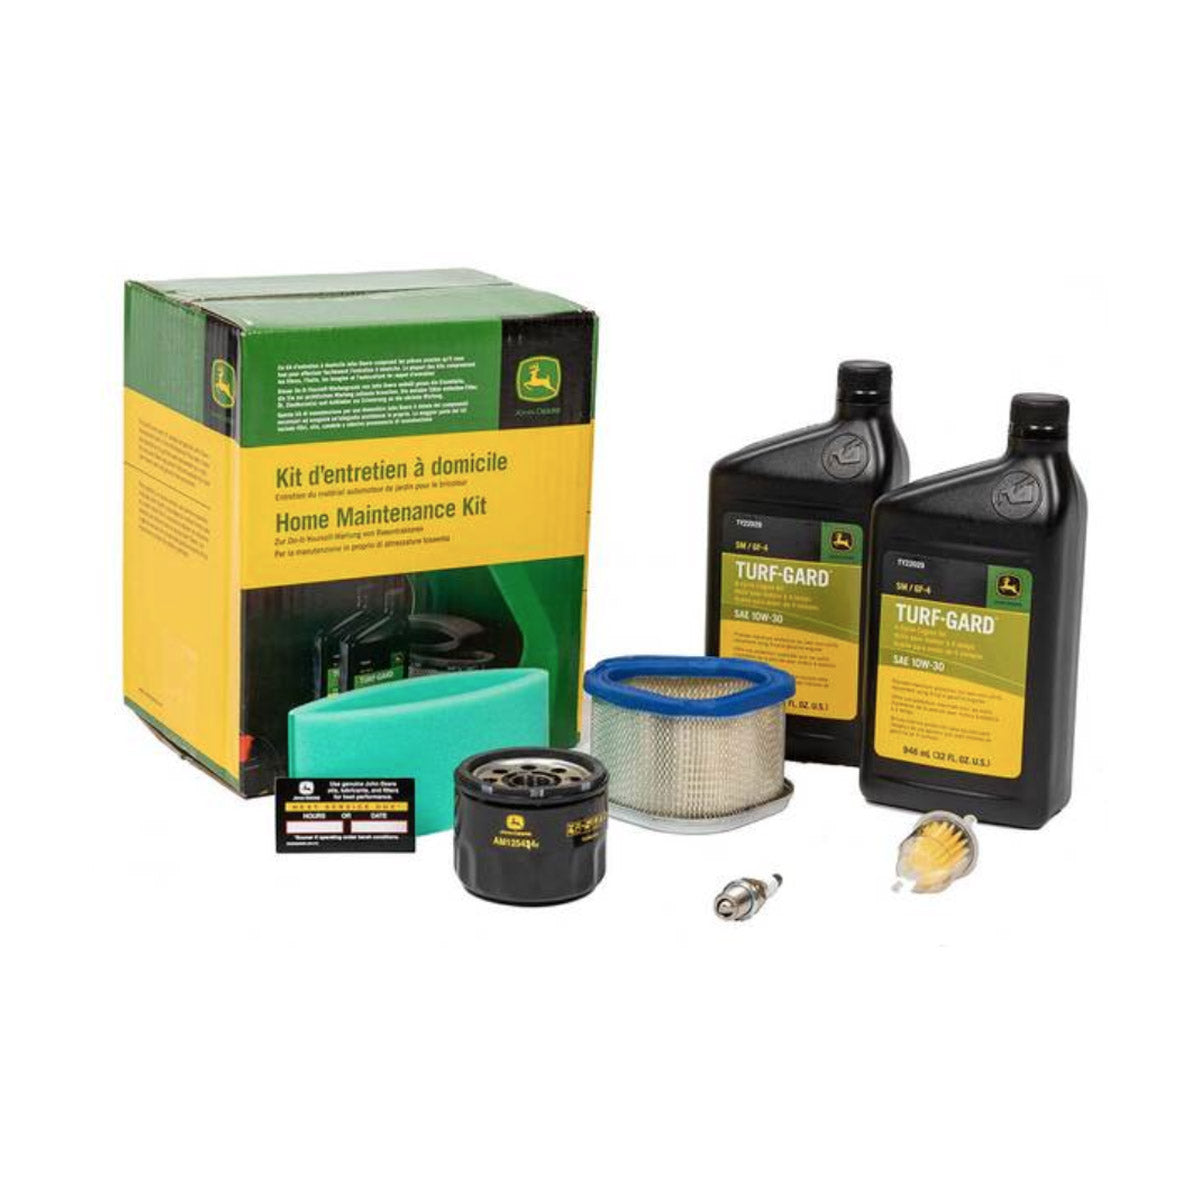 John Deere Home Maintenance Kit for LT, LX, GT & SST Series - LG191